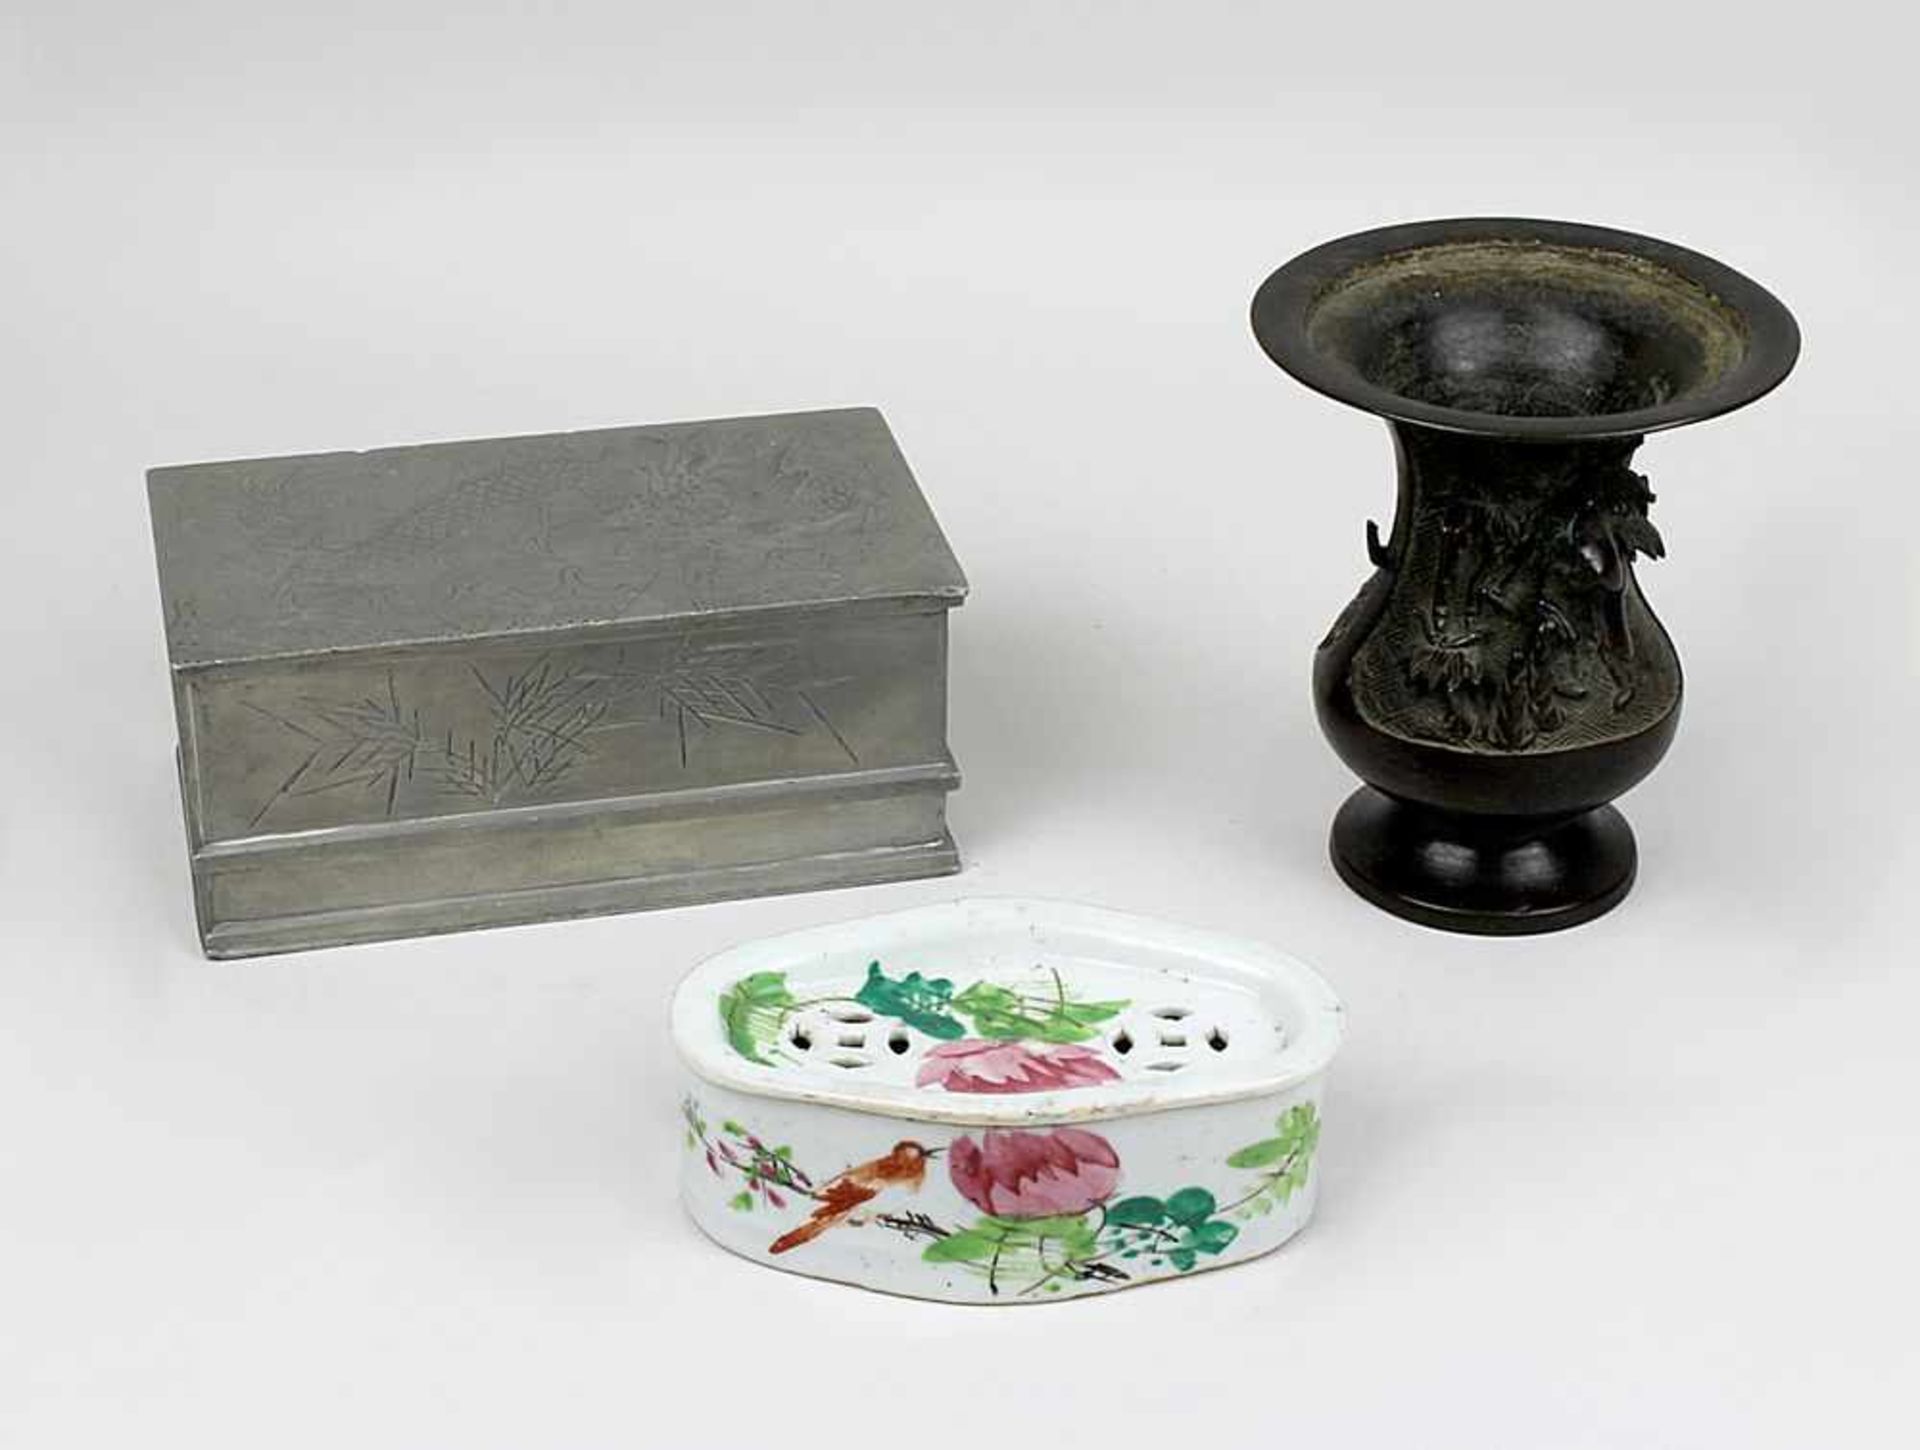 3 Teile China bzw. Asien, 1. H. 20. Jh., bestehend aus: rechteckige Zinndose mit graviertem